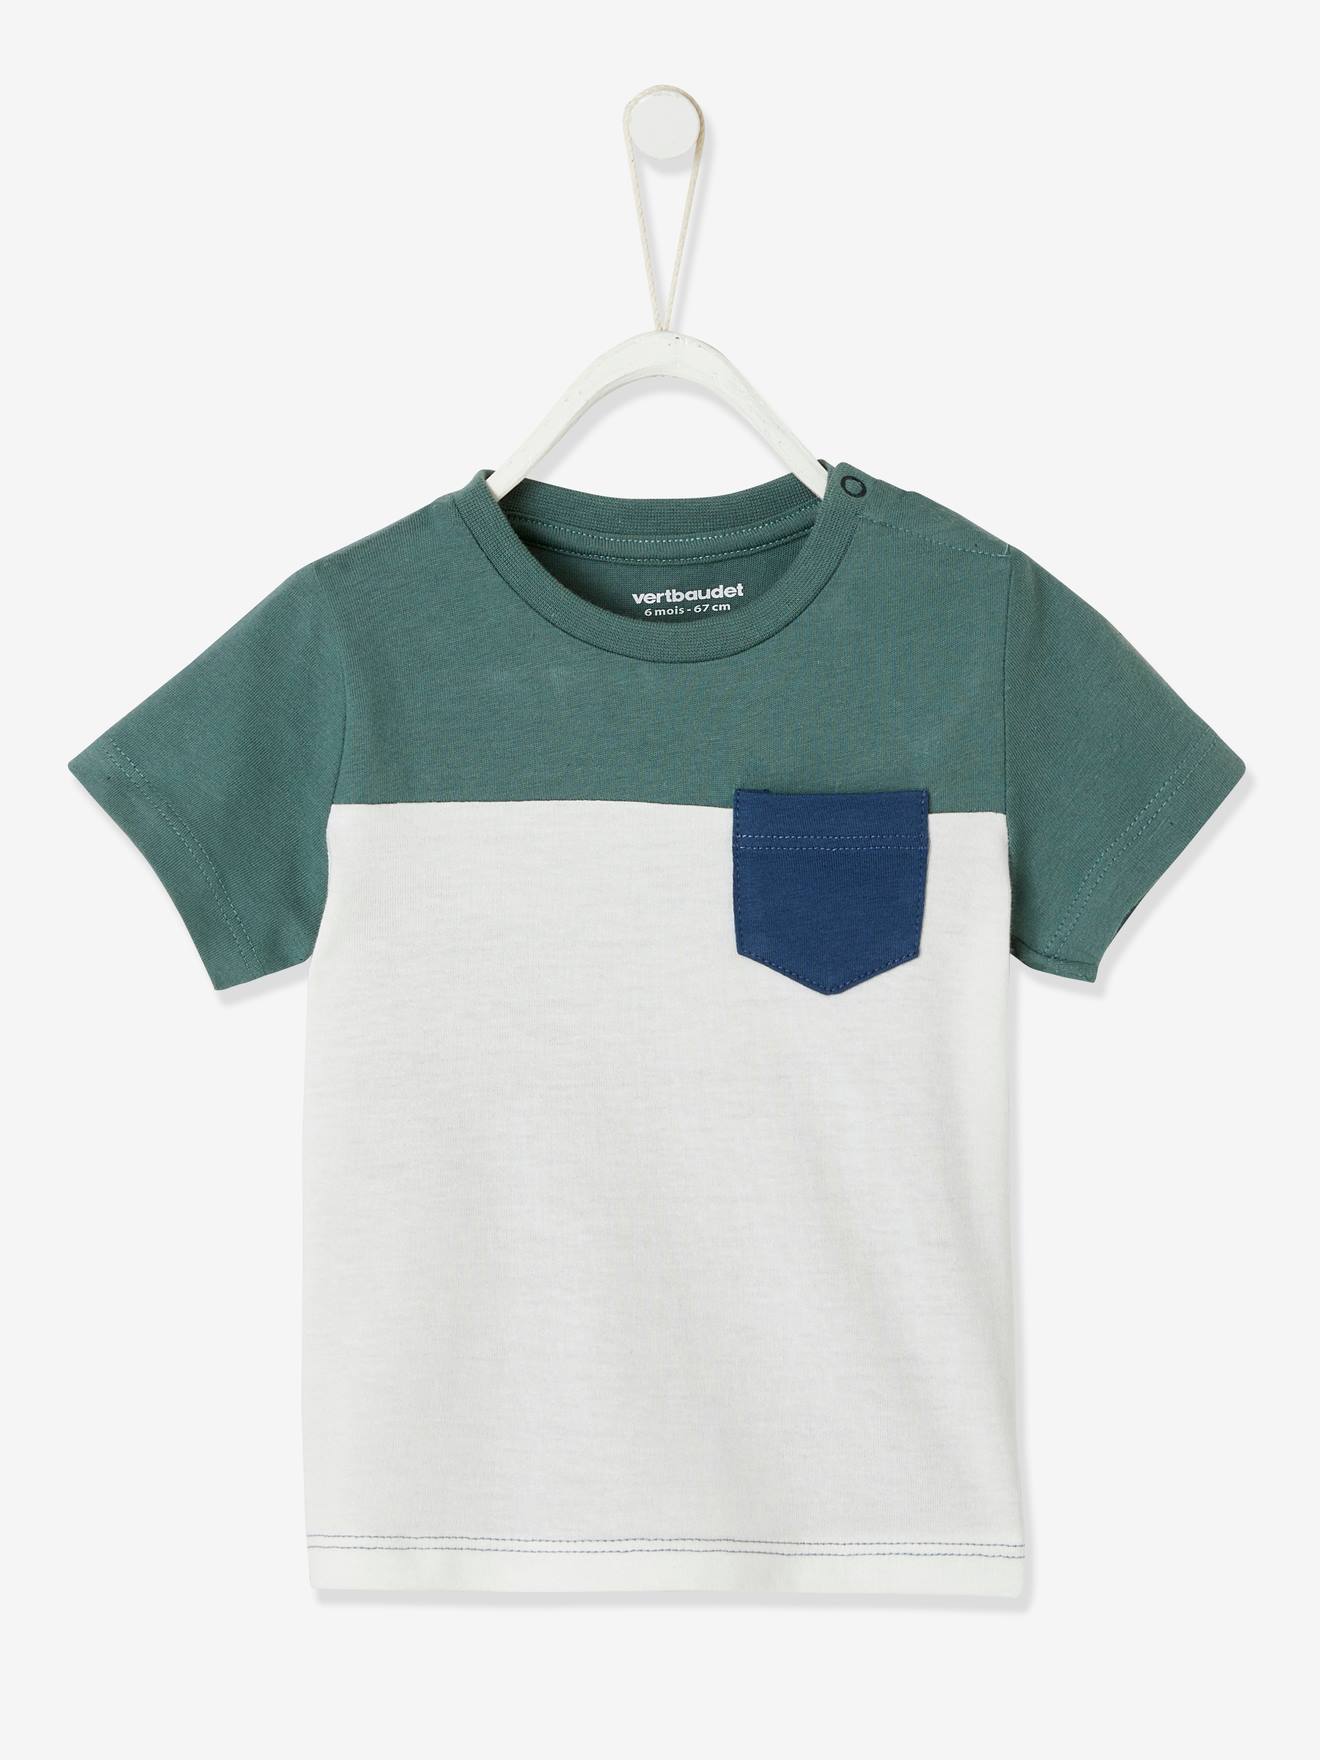 74,80,86,92,98,110 Kanz Shirt kurzarm T-Shirt Gelb Baumwolle Baby Jungen Gr 